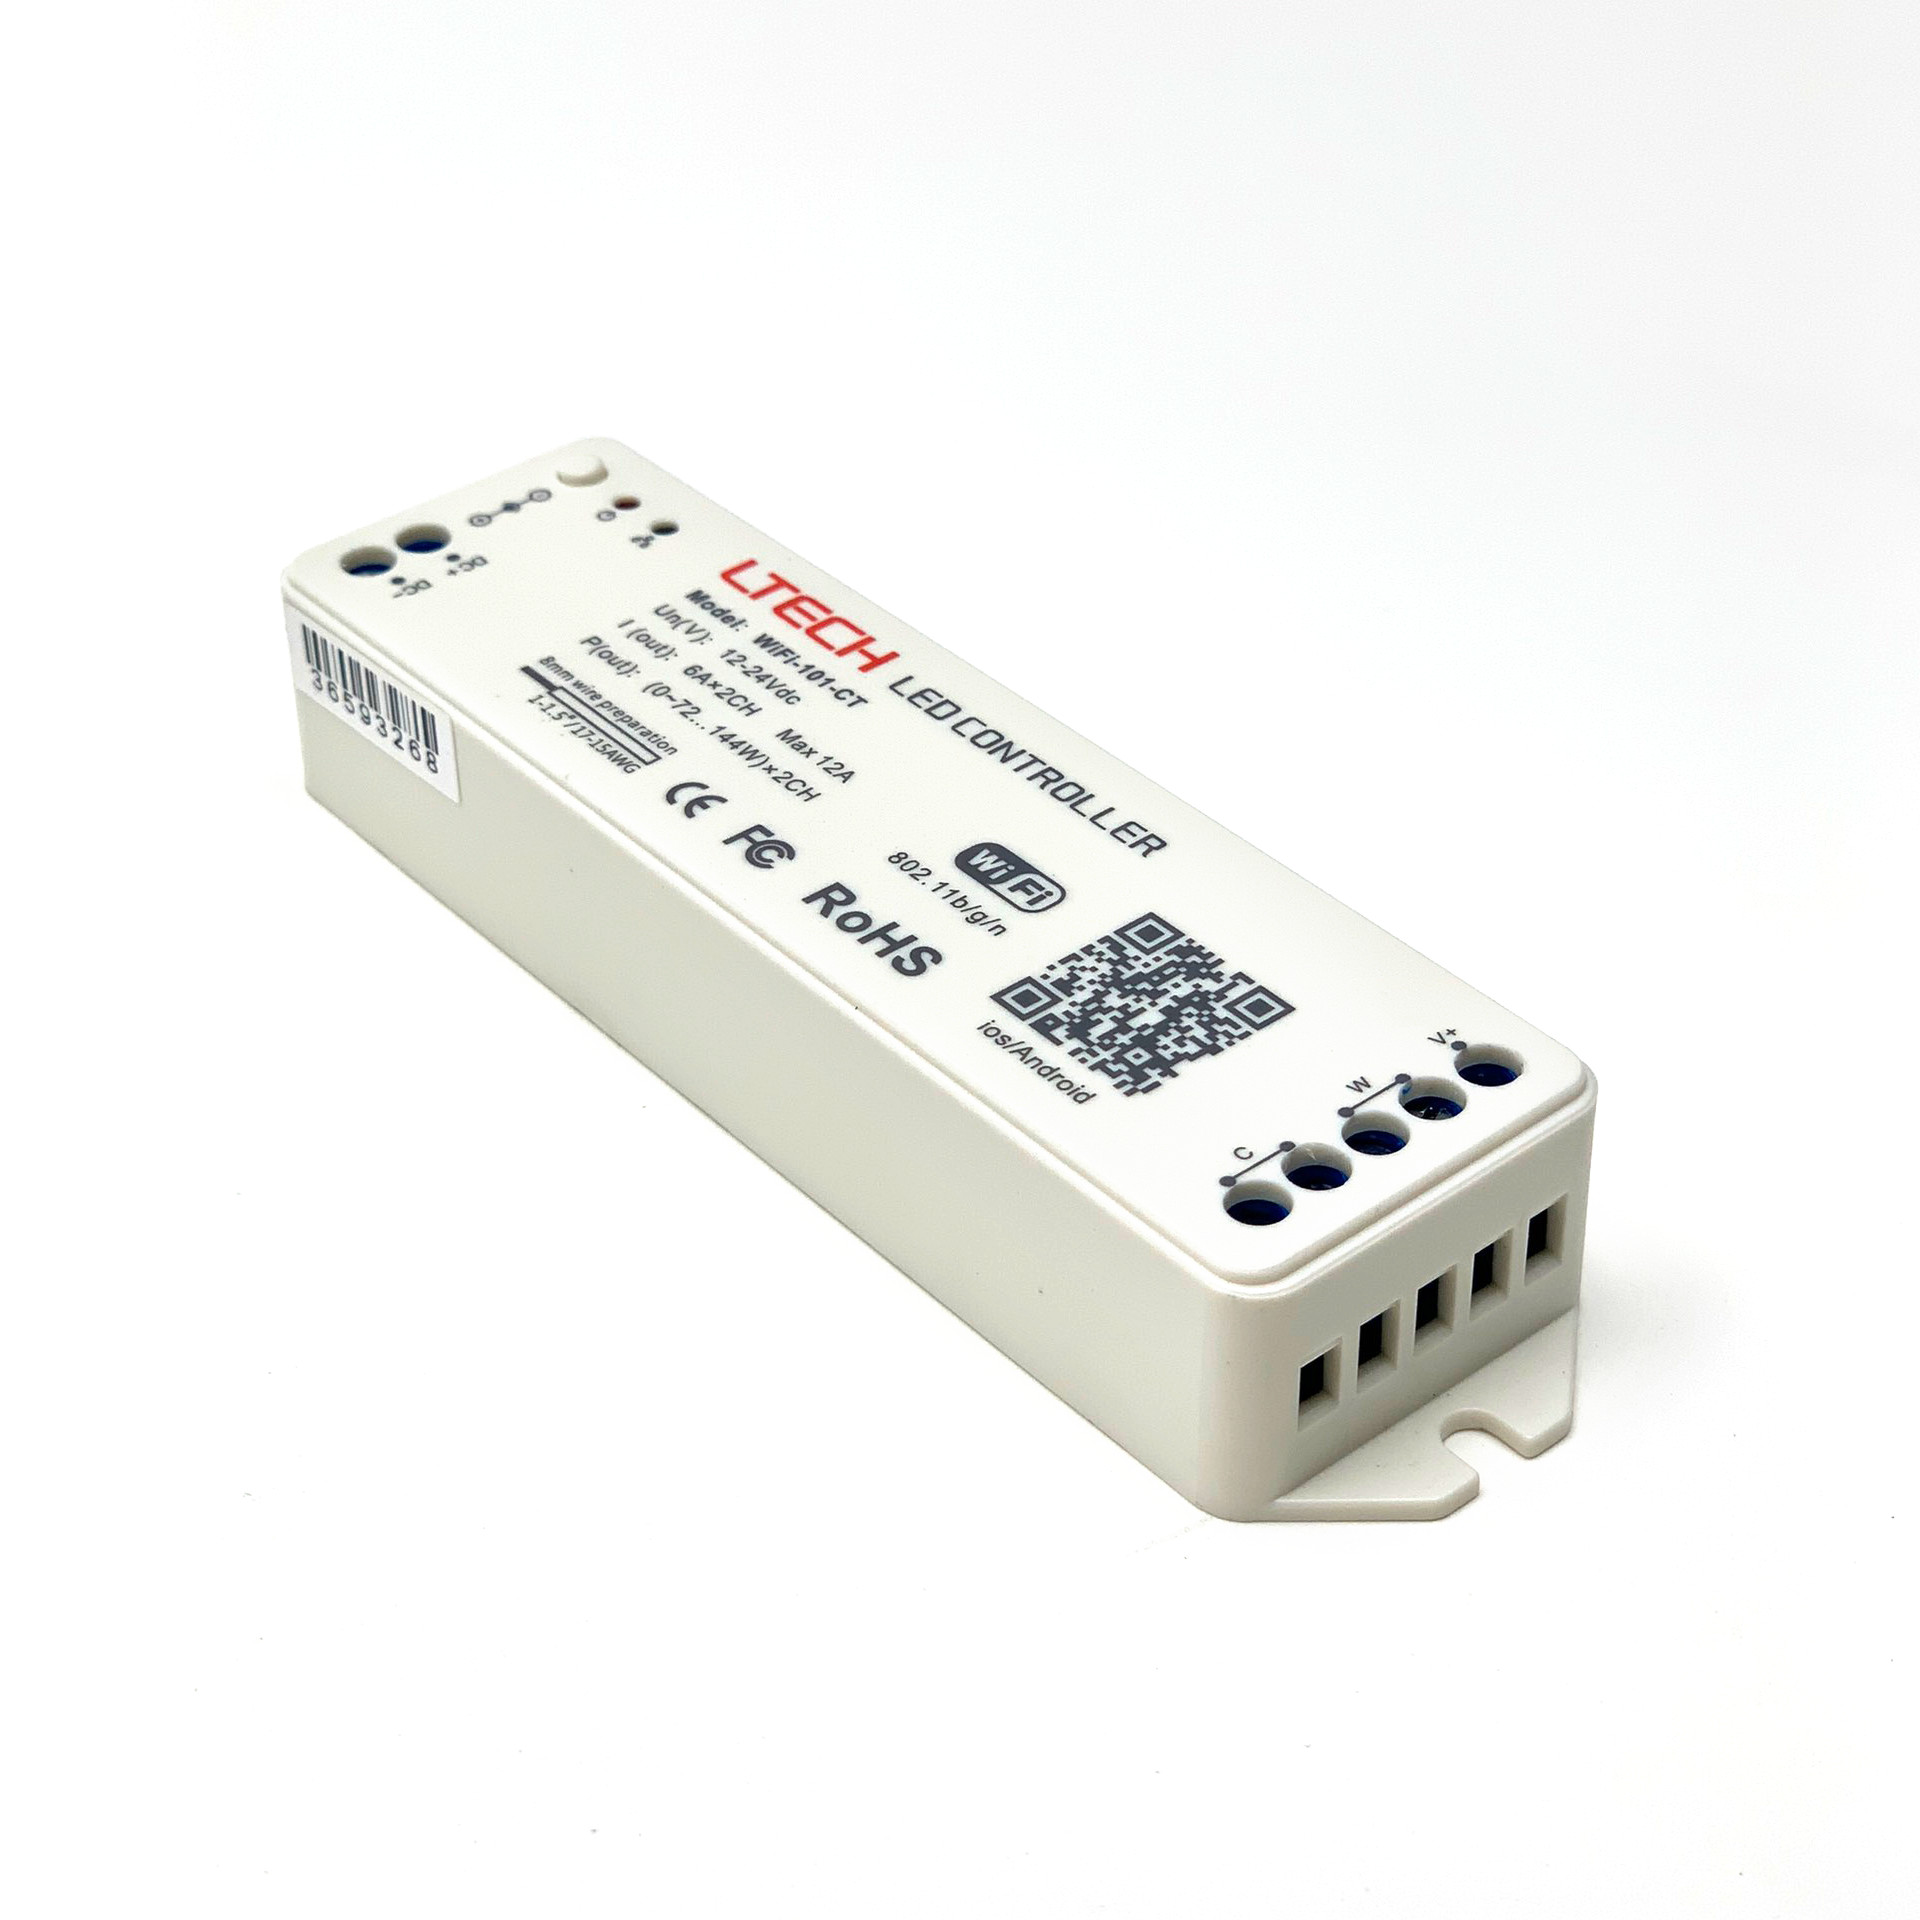 Bộ Điều Khiển Đèn Led Ltech Wifi-101-CT Điều Chỉnh Màu Sắc Ánh Sáng, LED Dimmer Controller - Hàng Nhập Khẩu